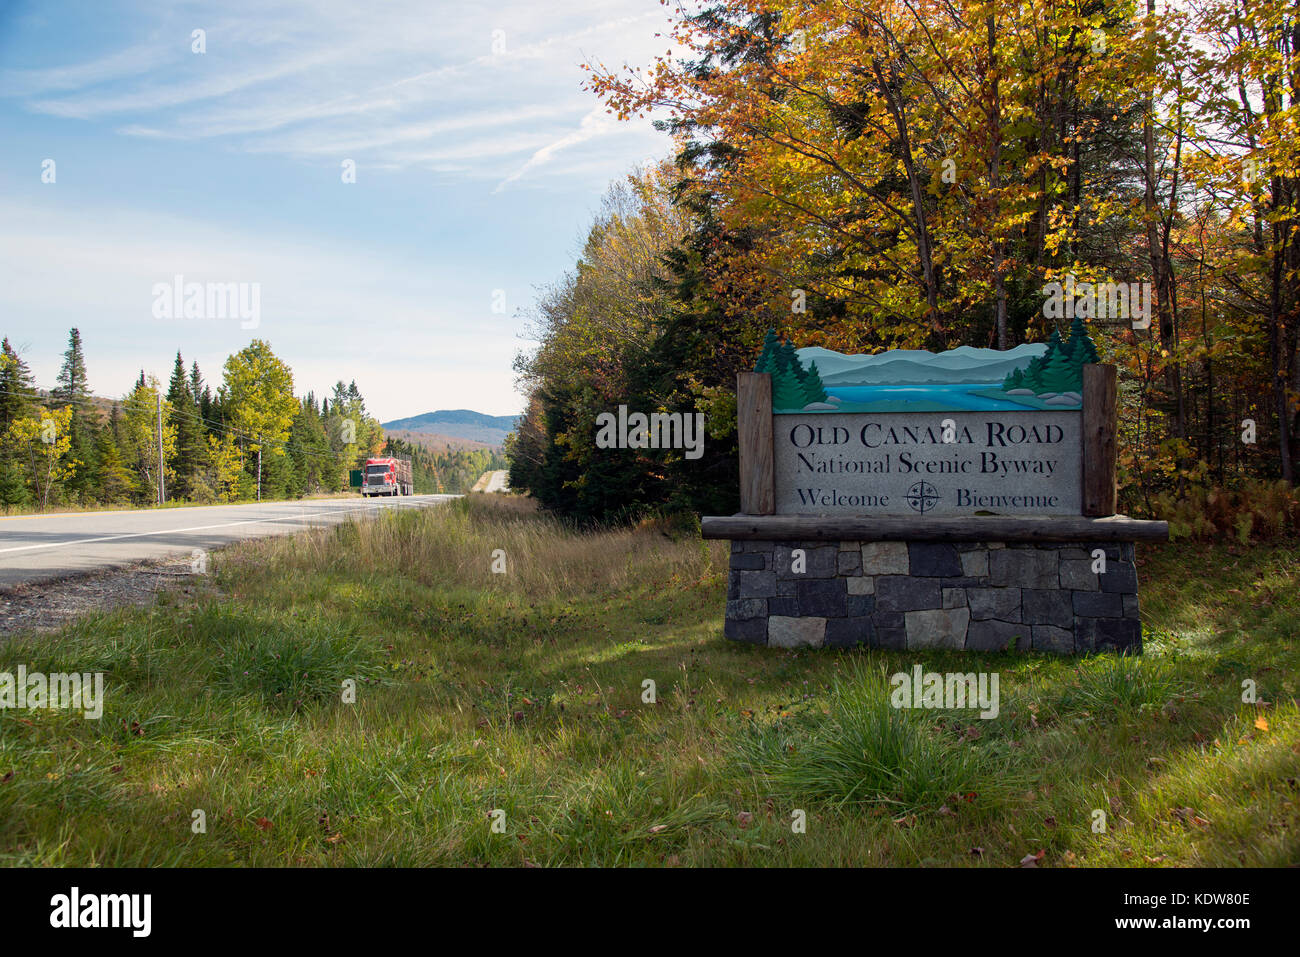 Firmar para el viejo Canadá National Scenic Road, una desviación en el norte de Maine al sur de la frontera con Quebec, con camión de registro en segundo plano. Foto de stock